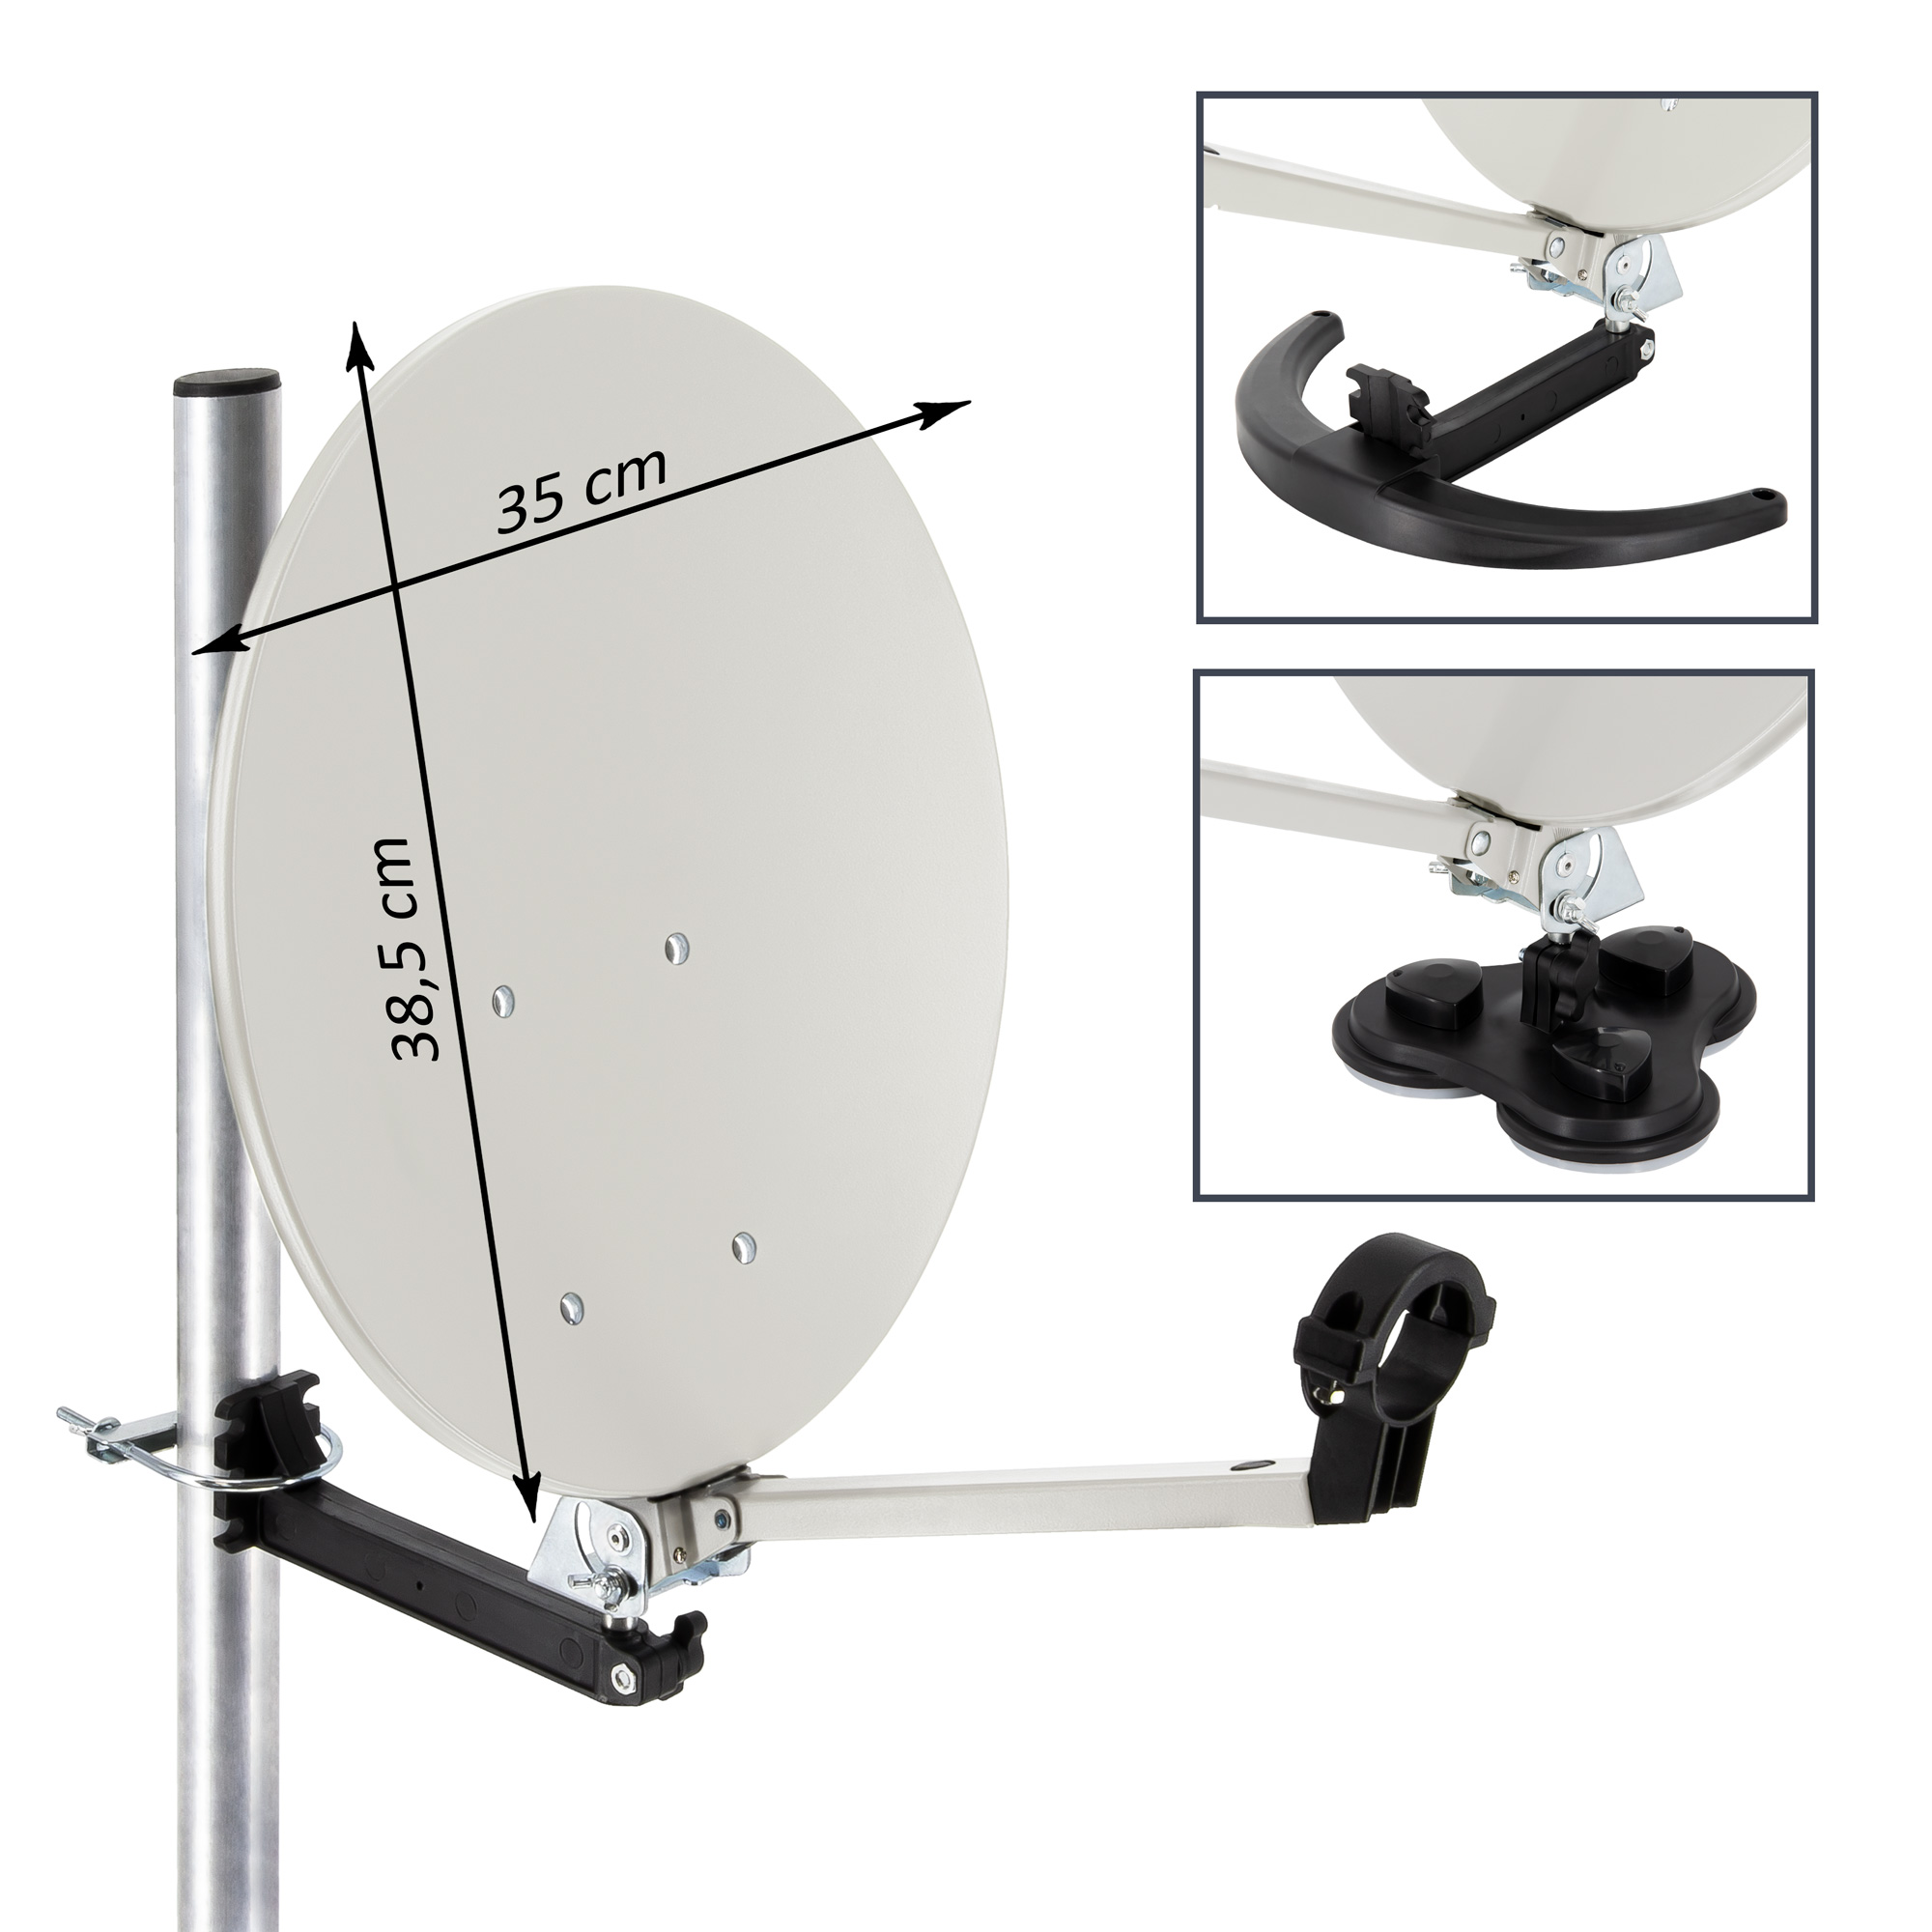 PREMIUMX Camping Anlage Single Koffer im Kabel Anlage Satelliten-Finder cm, LNB) Sat Single Antenne TV Receiver LNB SAT (35 10m HD